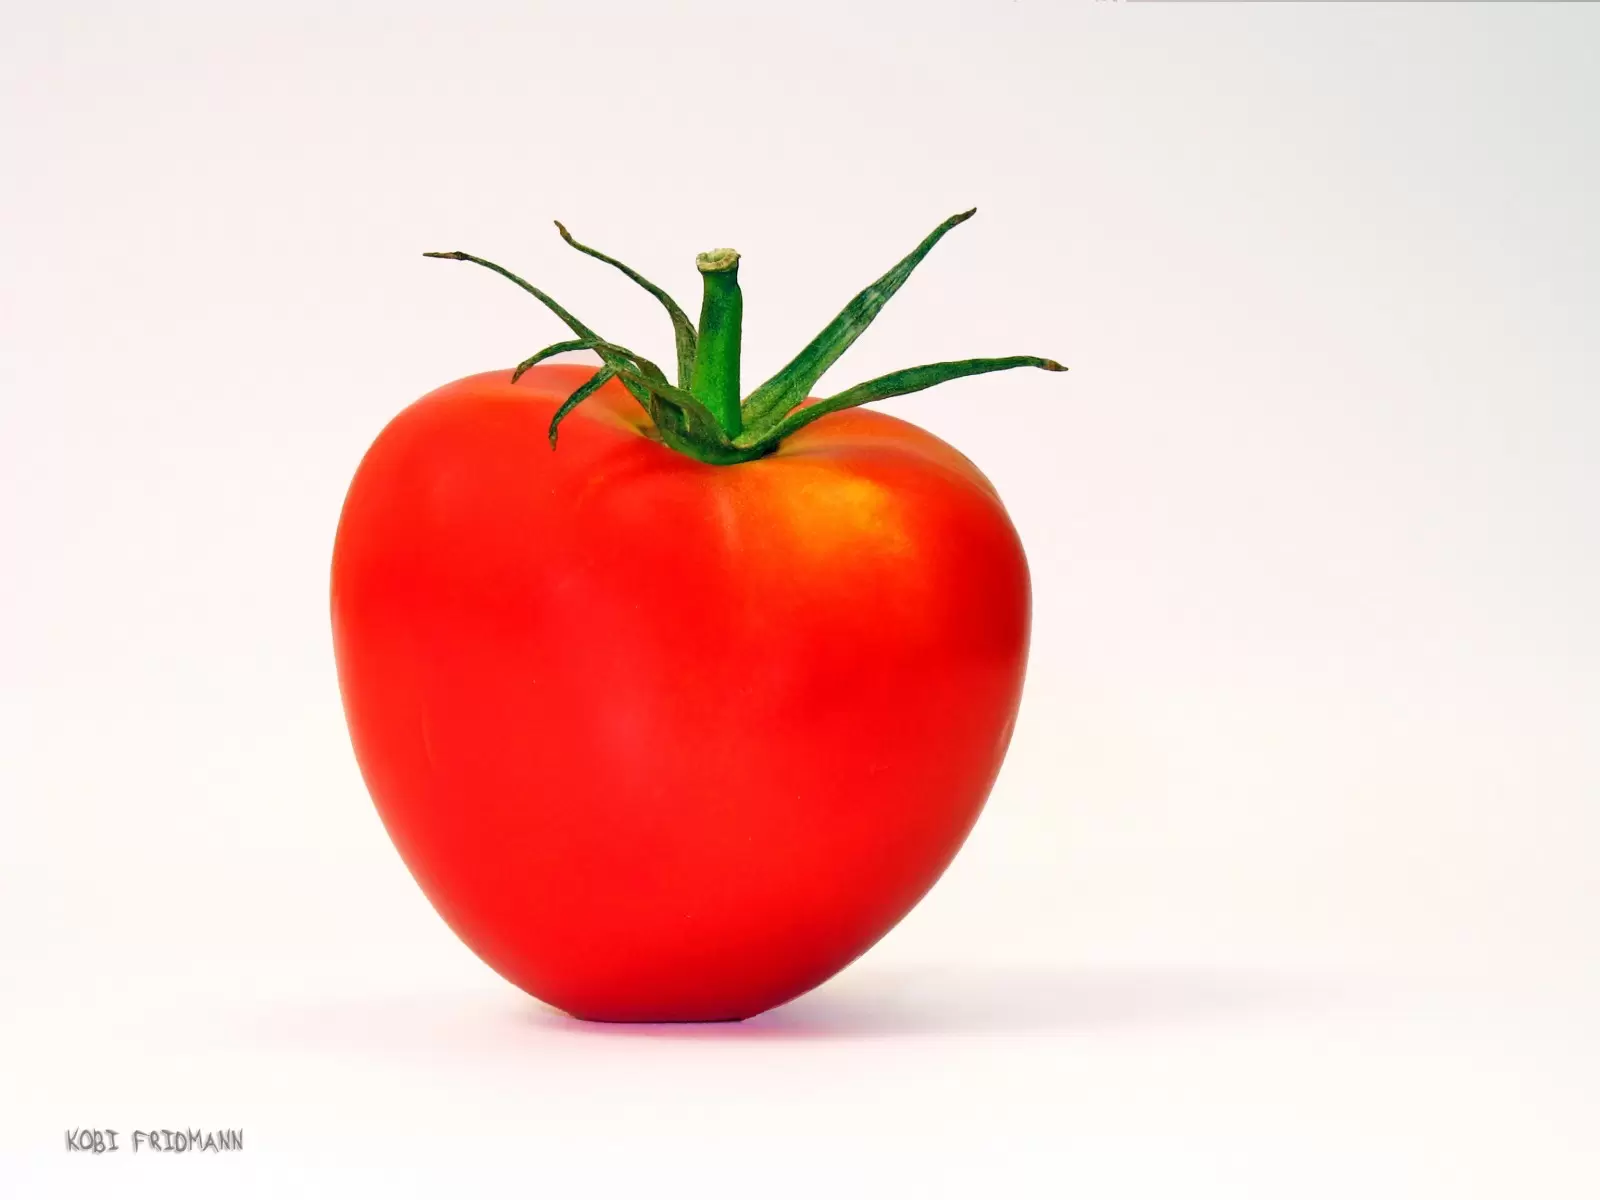 עגבניה - קובי פרידמן - תמונות למטבח מודרני תמונות סטודיו רקע לבן  - מק''ט: 19710